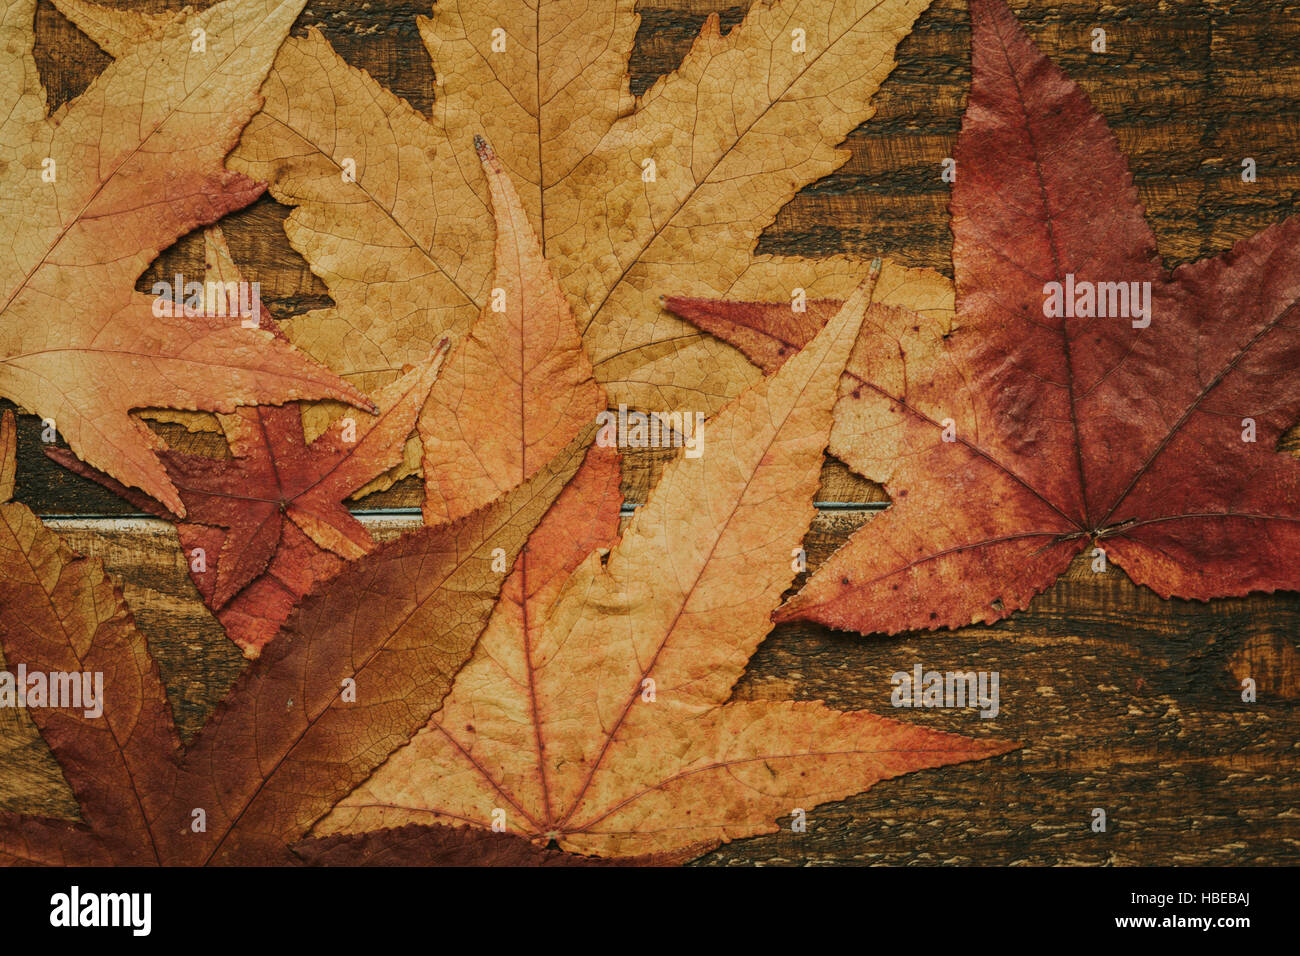 Schöne Blätter mit vielen Farben ab Herbst Stockfoto